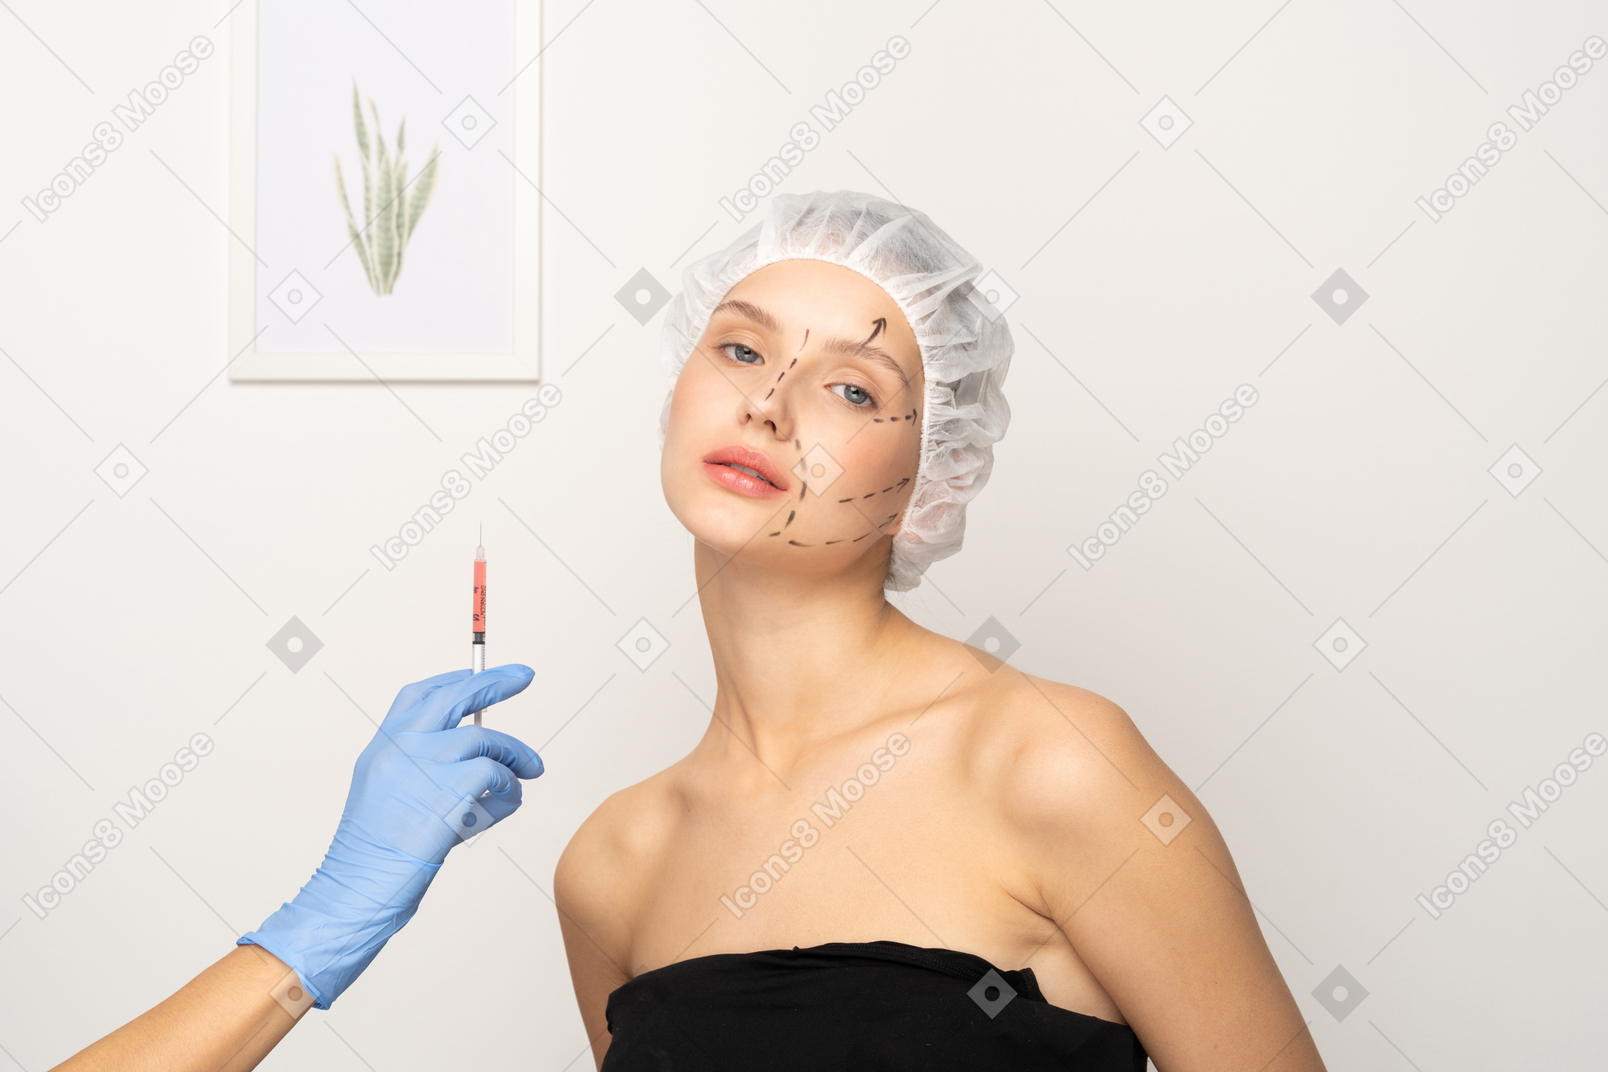 ボトックス注射を受けようとしている若い女性